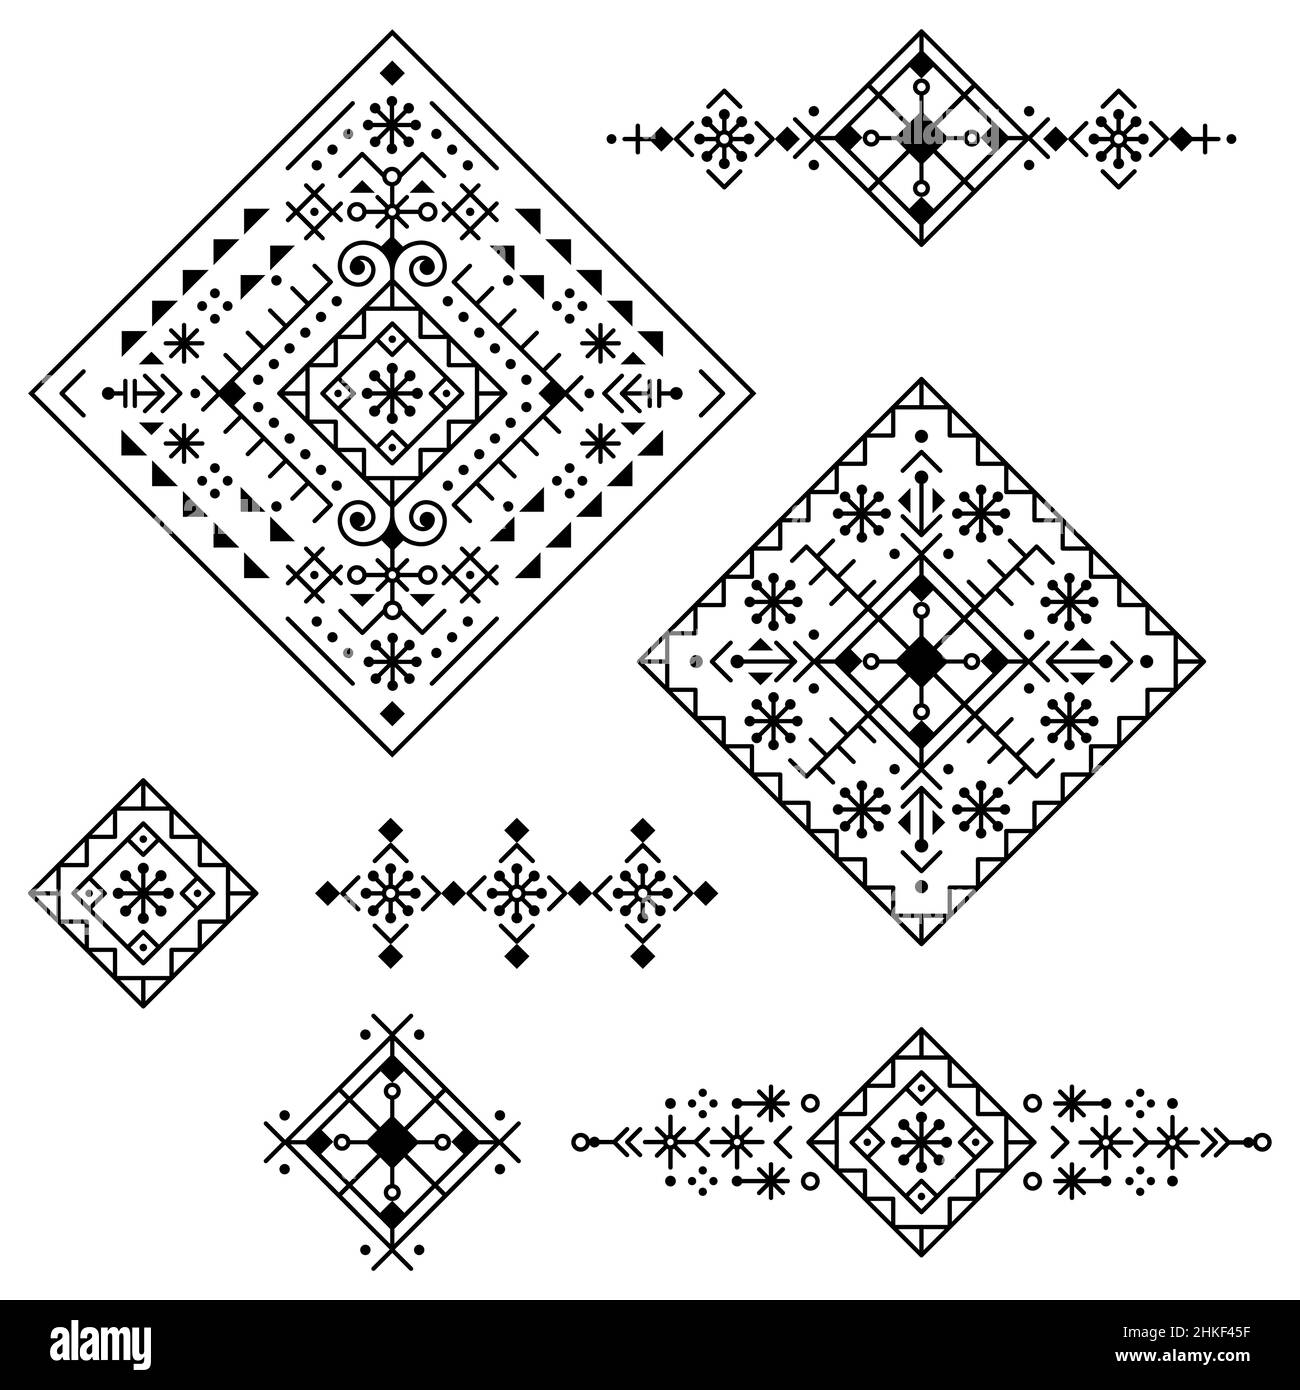 Linea tribale geometrica art vettoriale set design quadrato, collezione di motivi astratti ispirati all'arte delle rune nordiche vichinghe islandesi Illustrazione Vettoriale